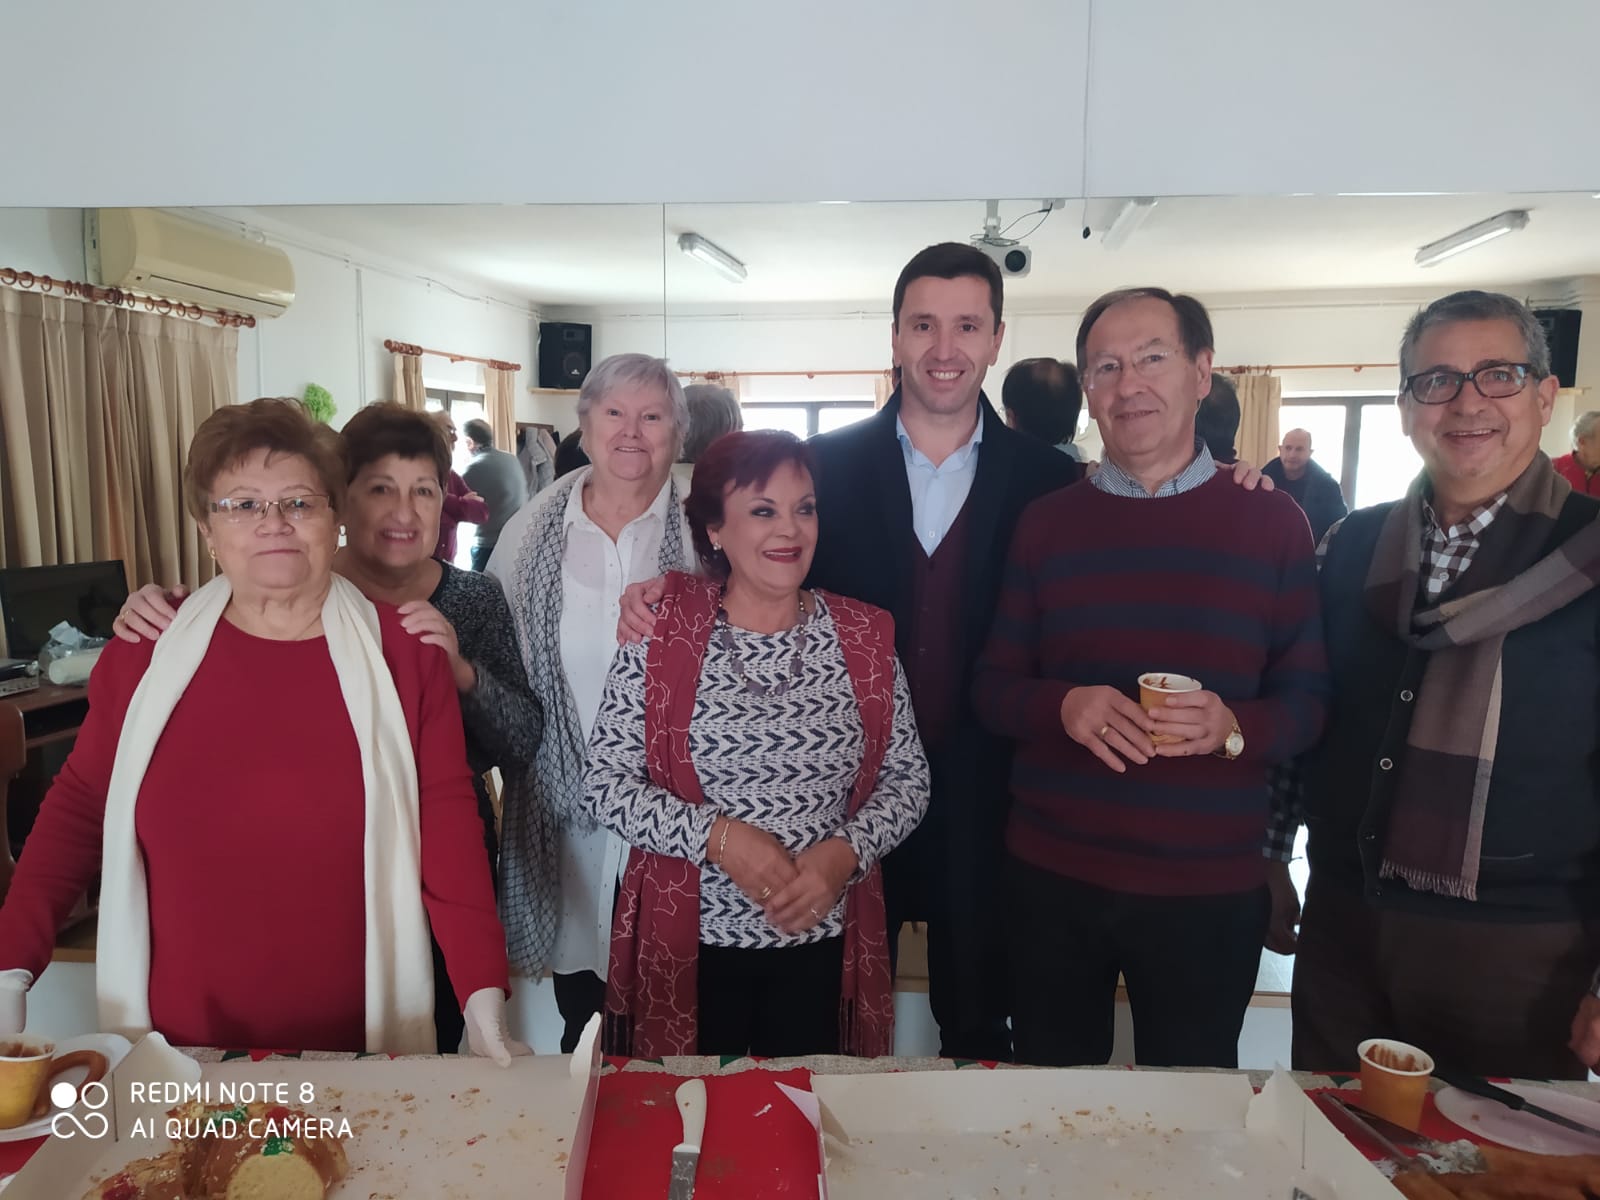 El gobierno municipal estrena agenda este 2020 junto a los mayores  para saborear el tradicional Roscón de Reyes  en el Hogar que recibe el año dispuesto a seguir llenándolo de actividades  para los vecinos de más edad